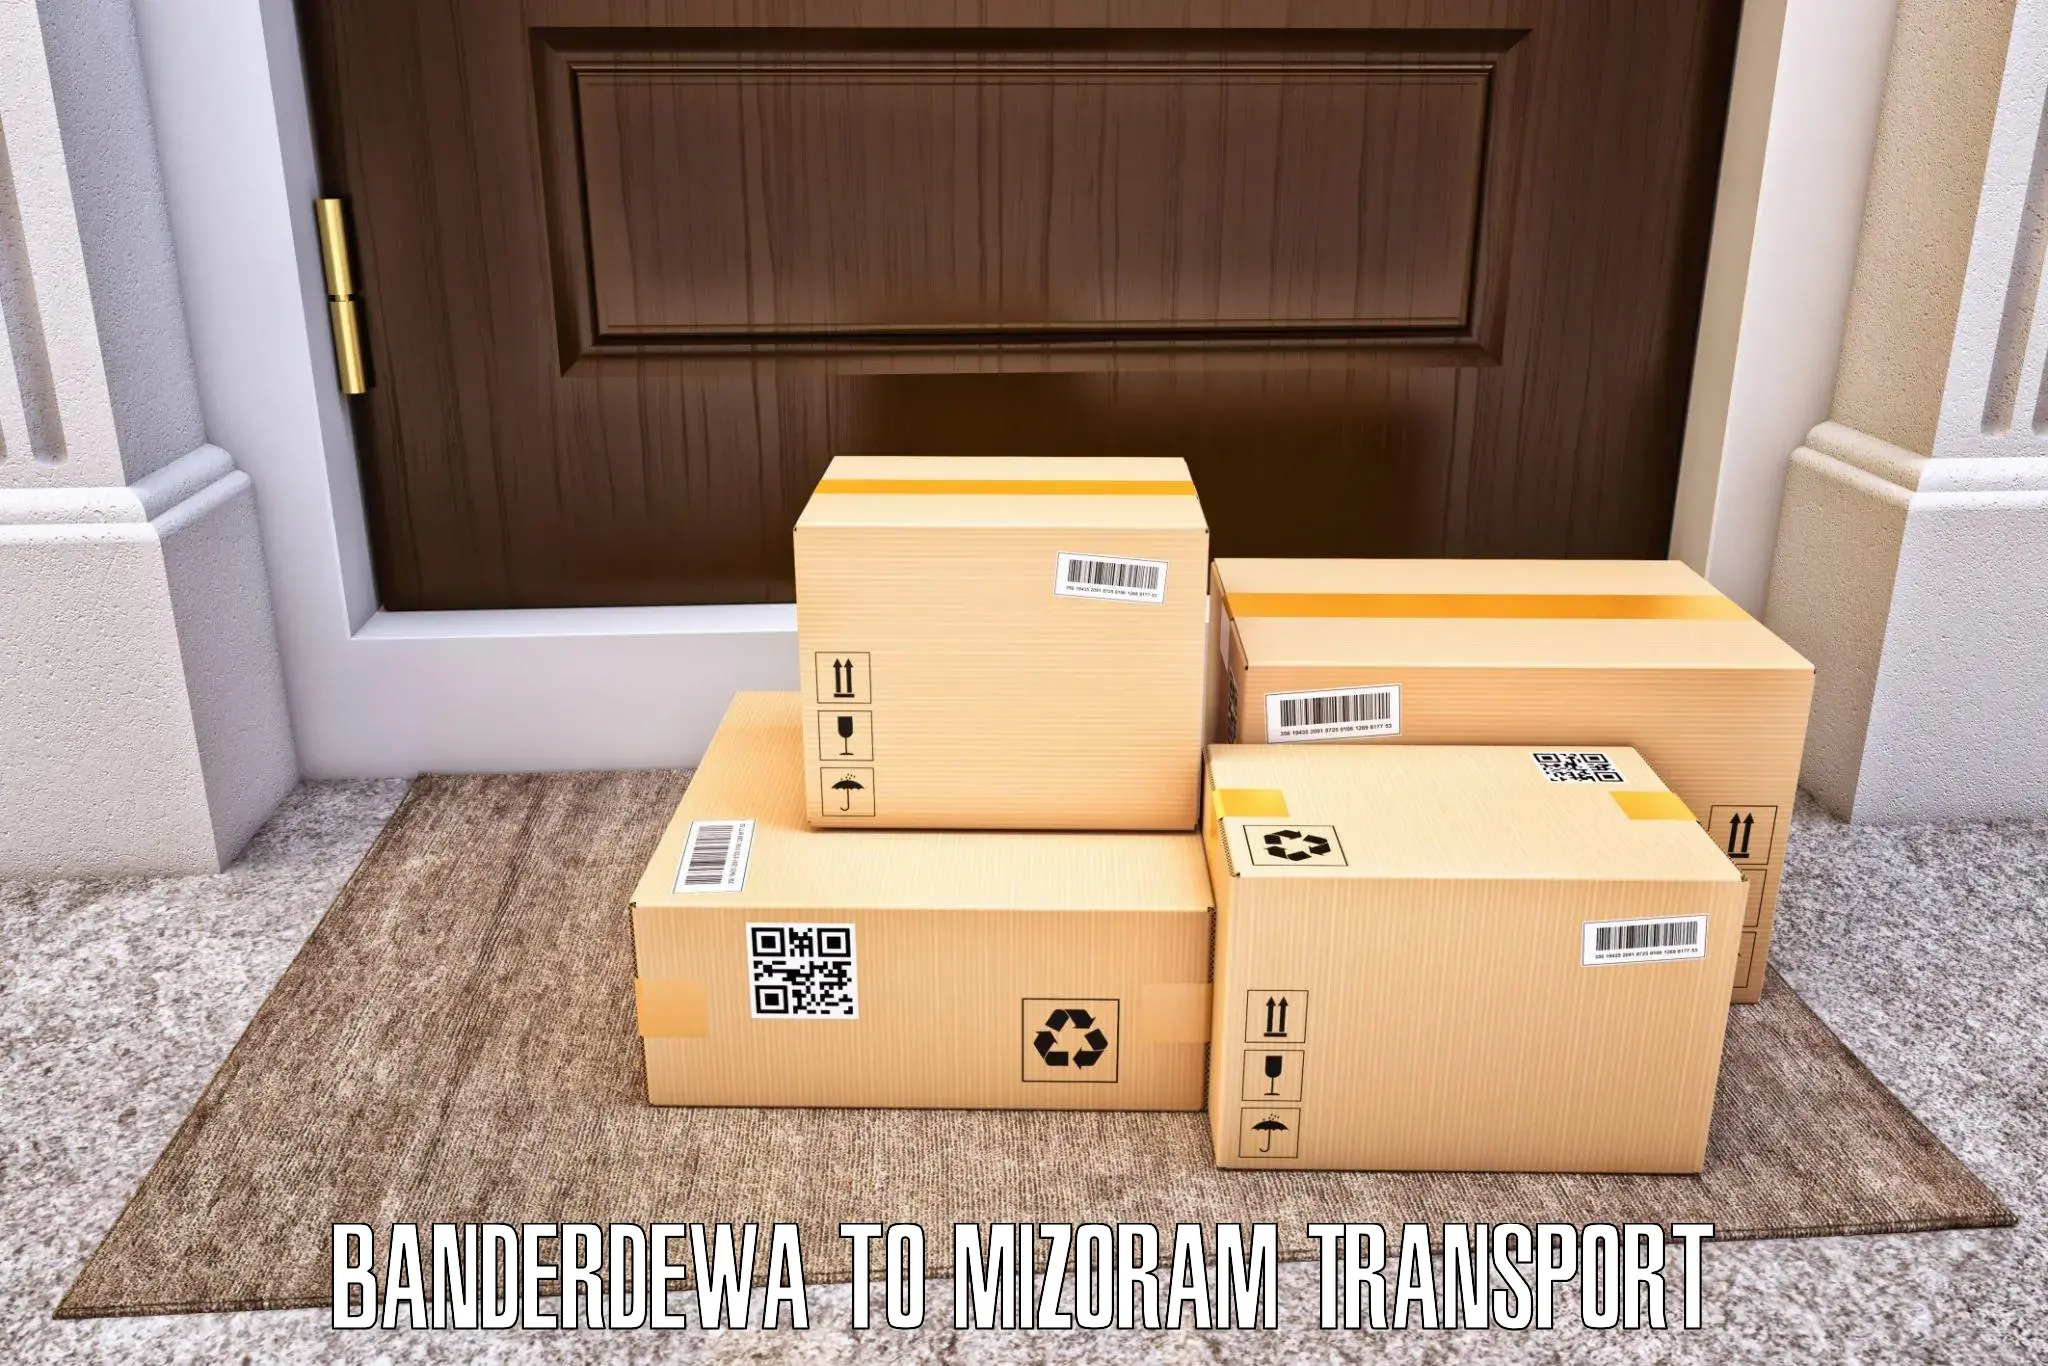 Online transport service Banderdewa to Mizoram